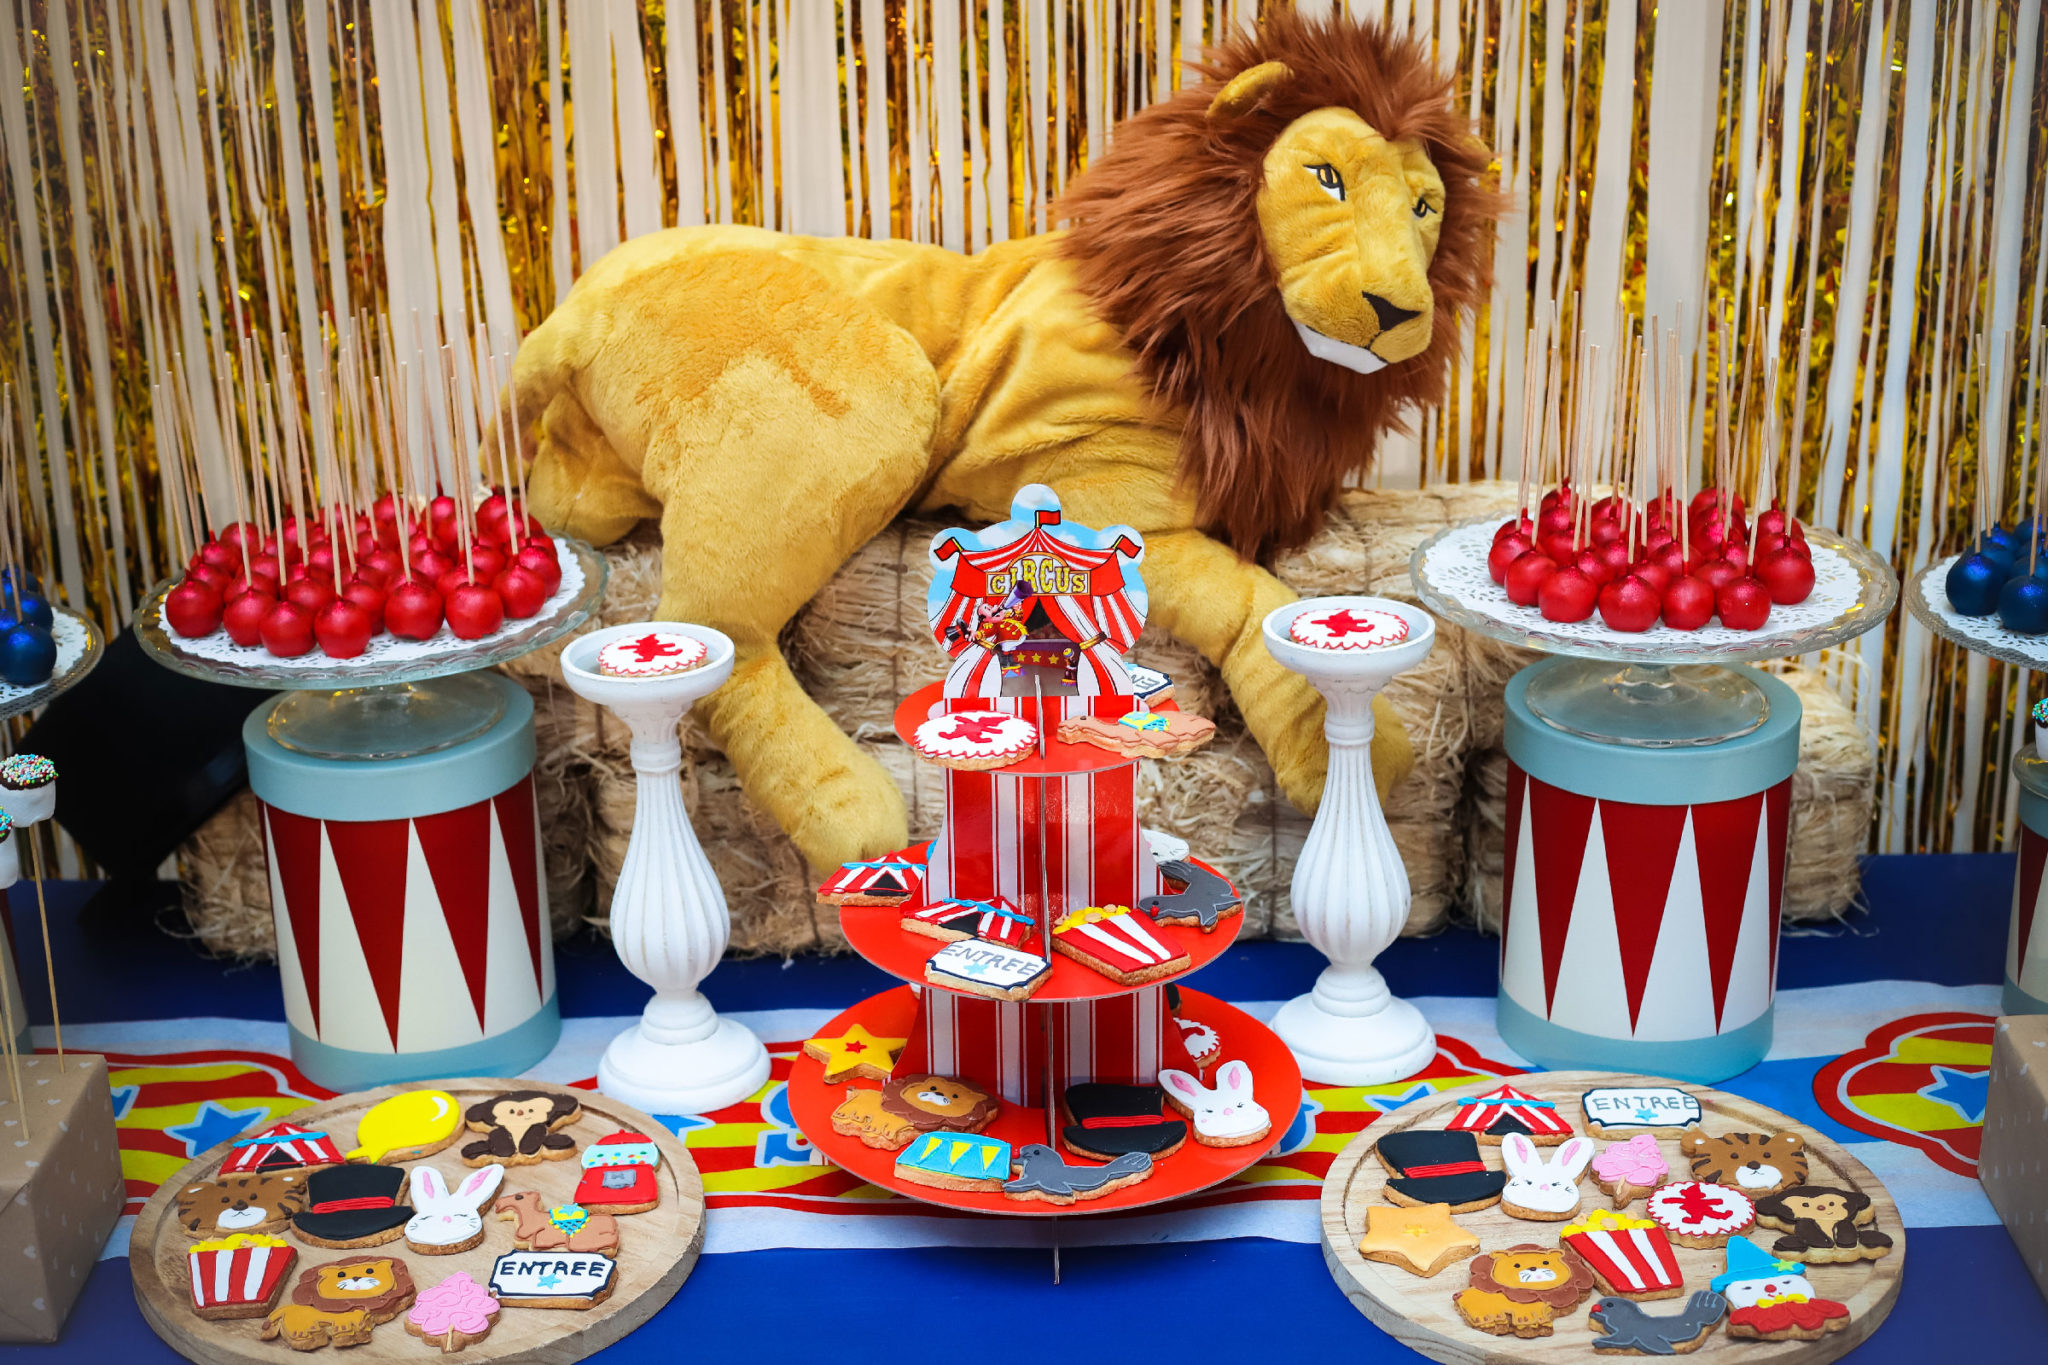 Sweet Table La parade du Cirque - Annikids, le blog